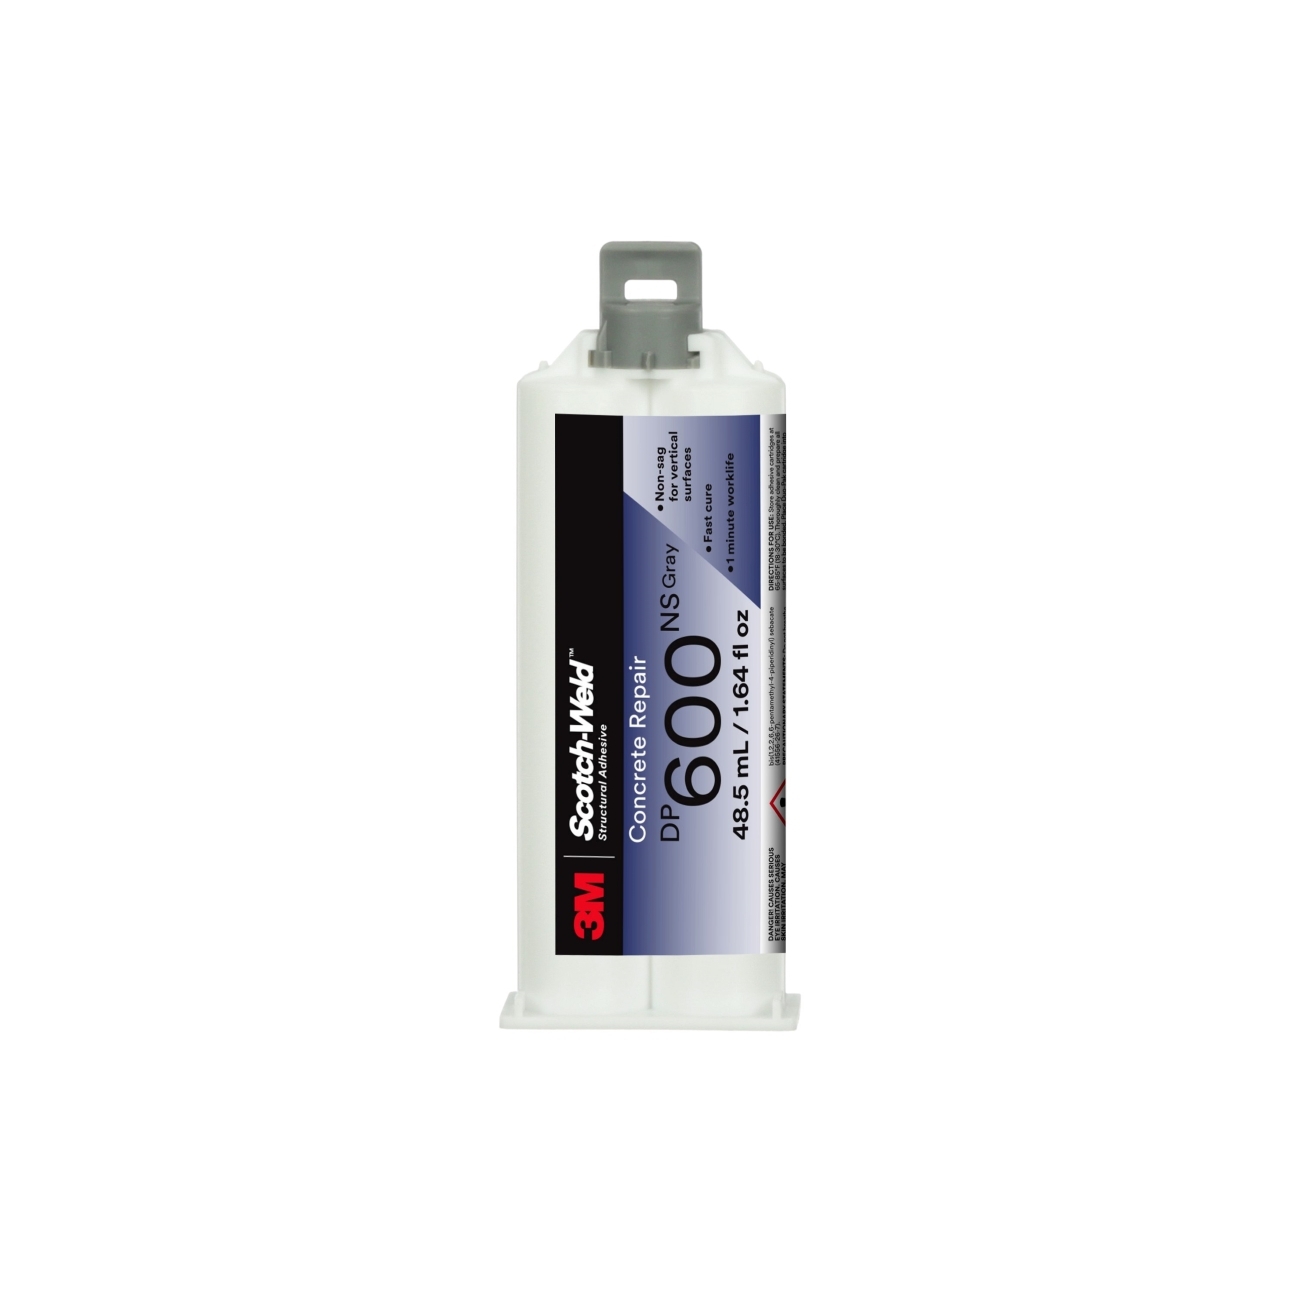 3M Scotch-Weld polyurethaanlijm voor betonreparatie DP600, grijs, 48,5 ml